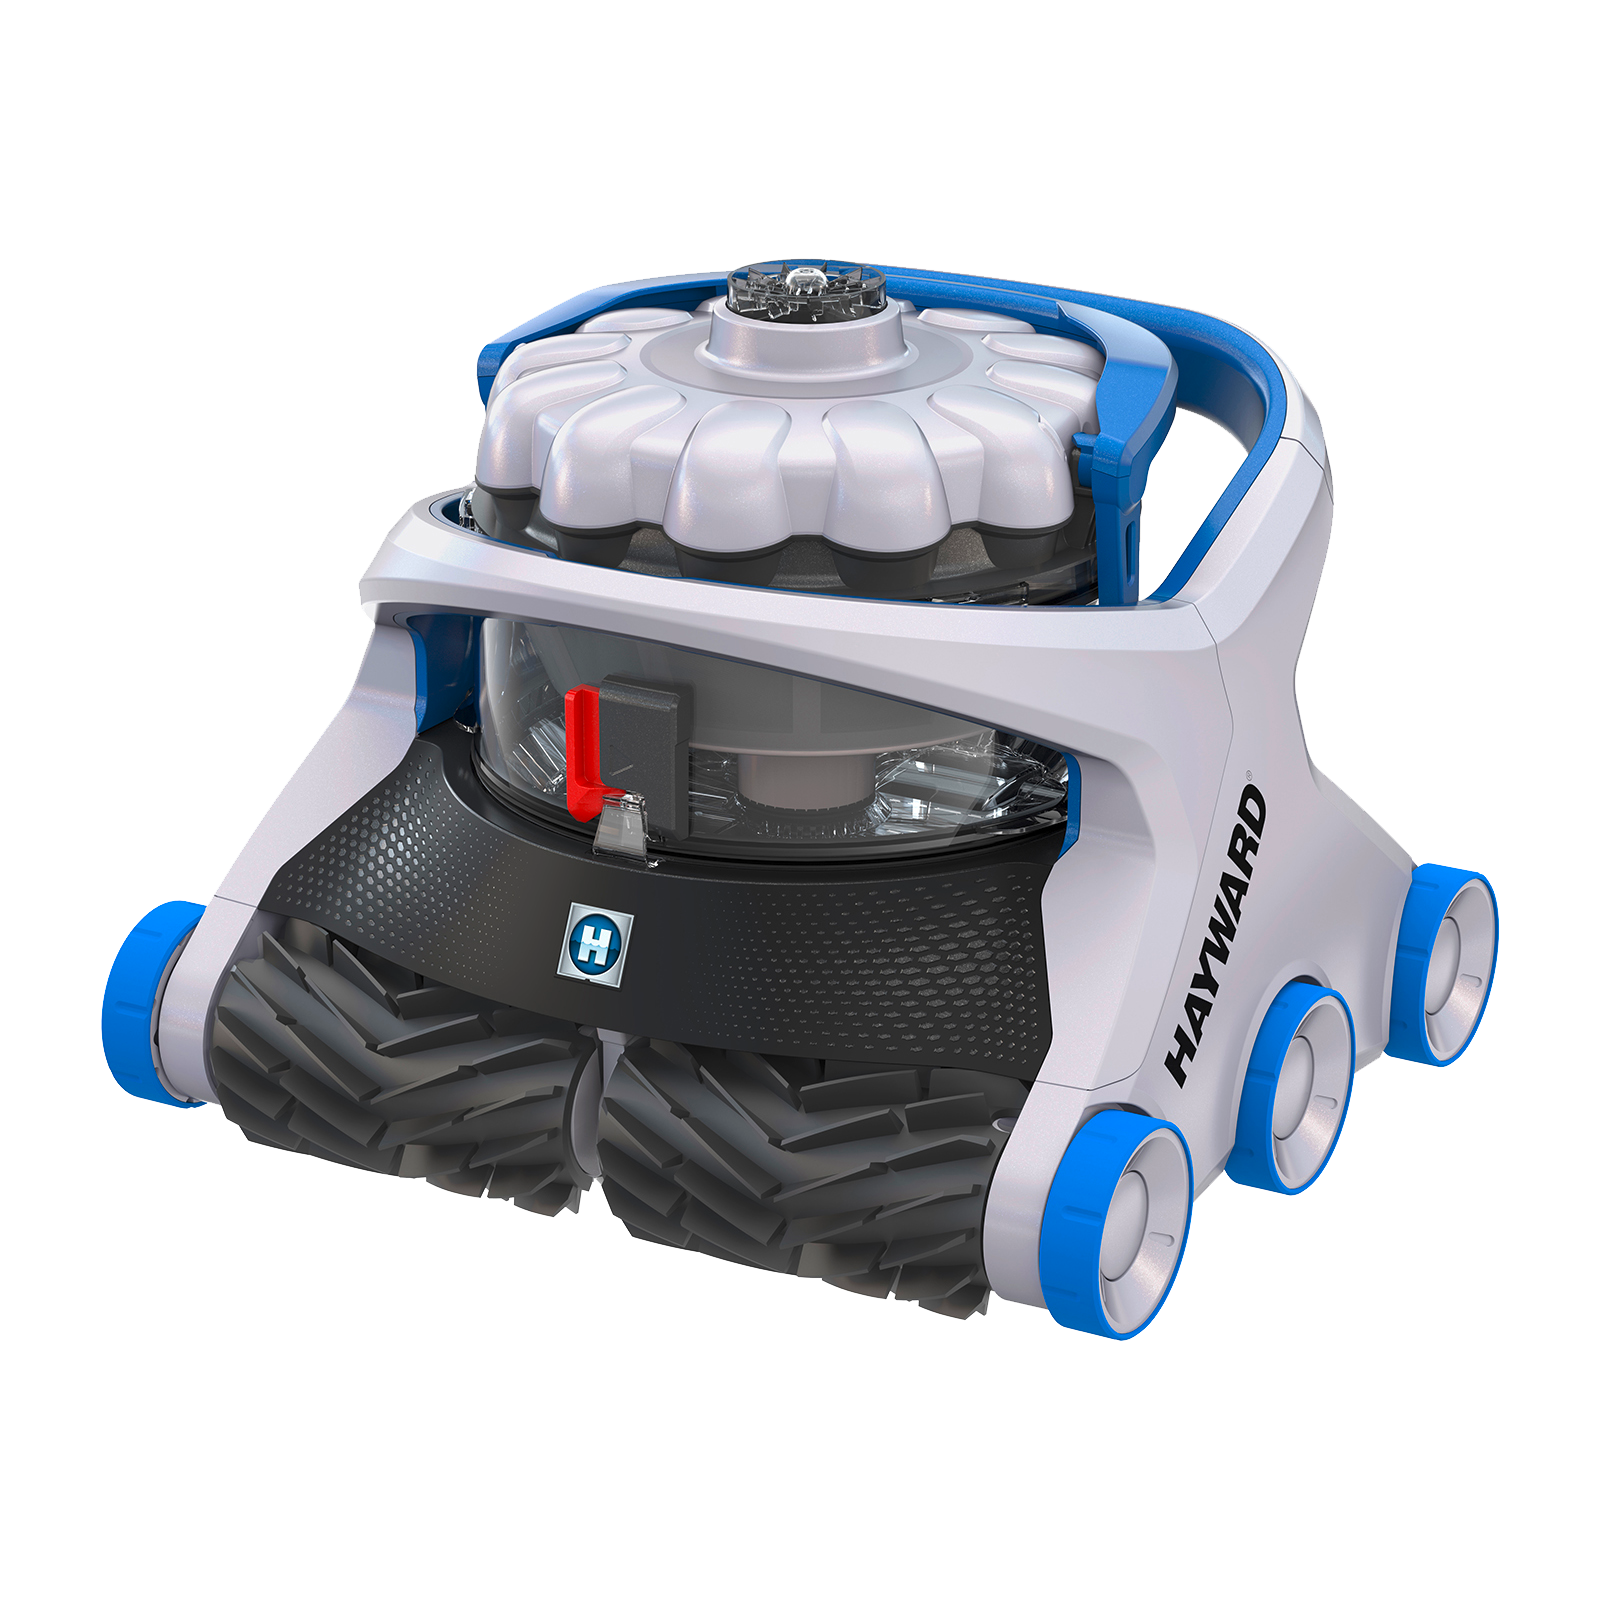 Le robot électrique de piscine de la gamme AquaVac 6 series